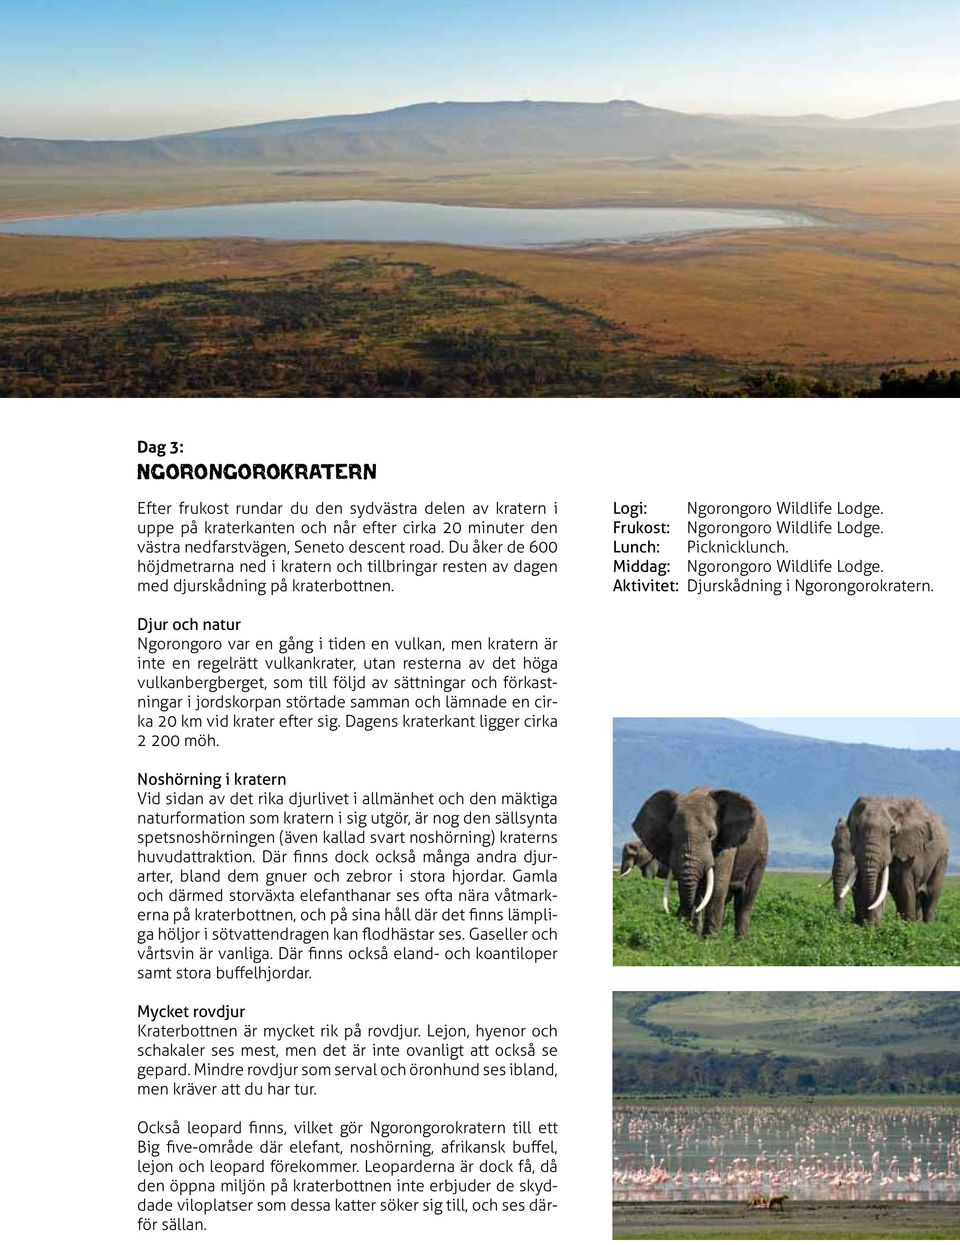 Middag: Ngorongoro Wildlife Lodge. Aktivitet: Djurskådning i Ngorongorokratern.